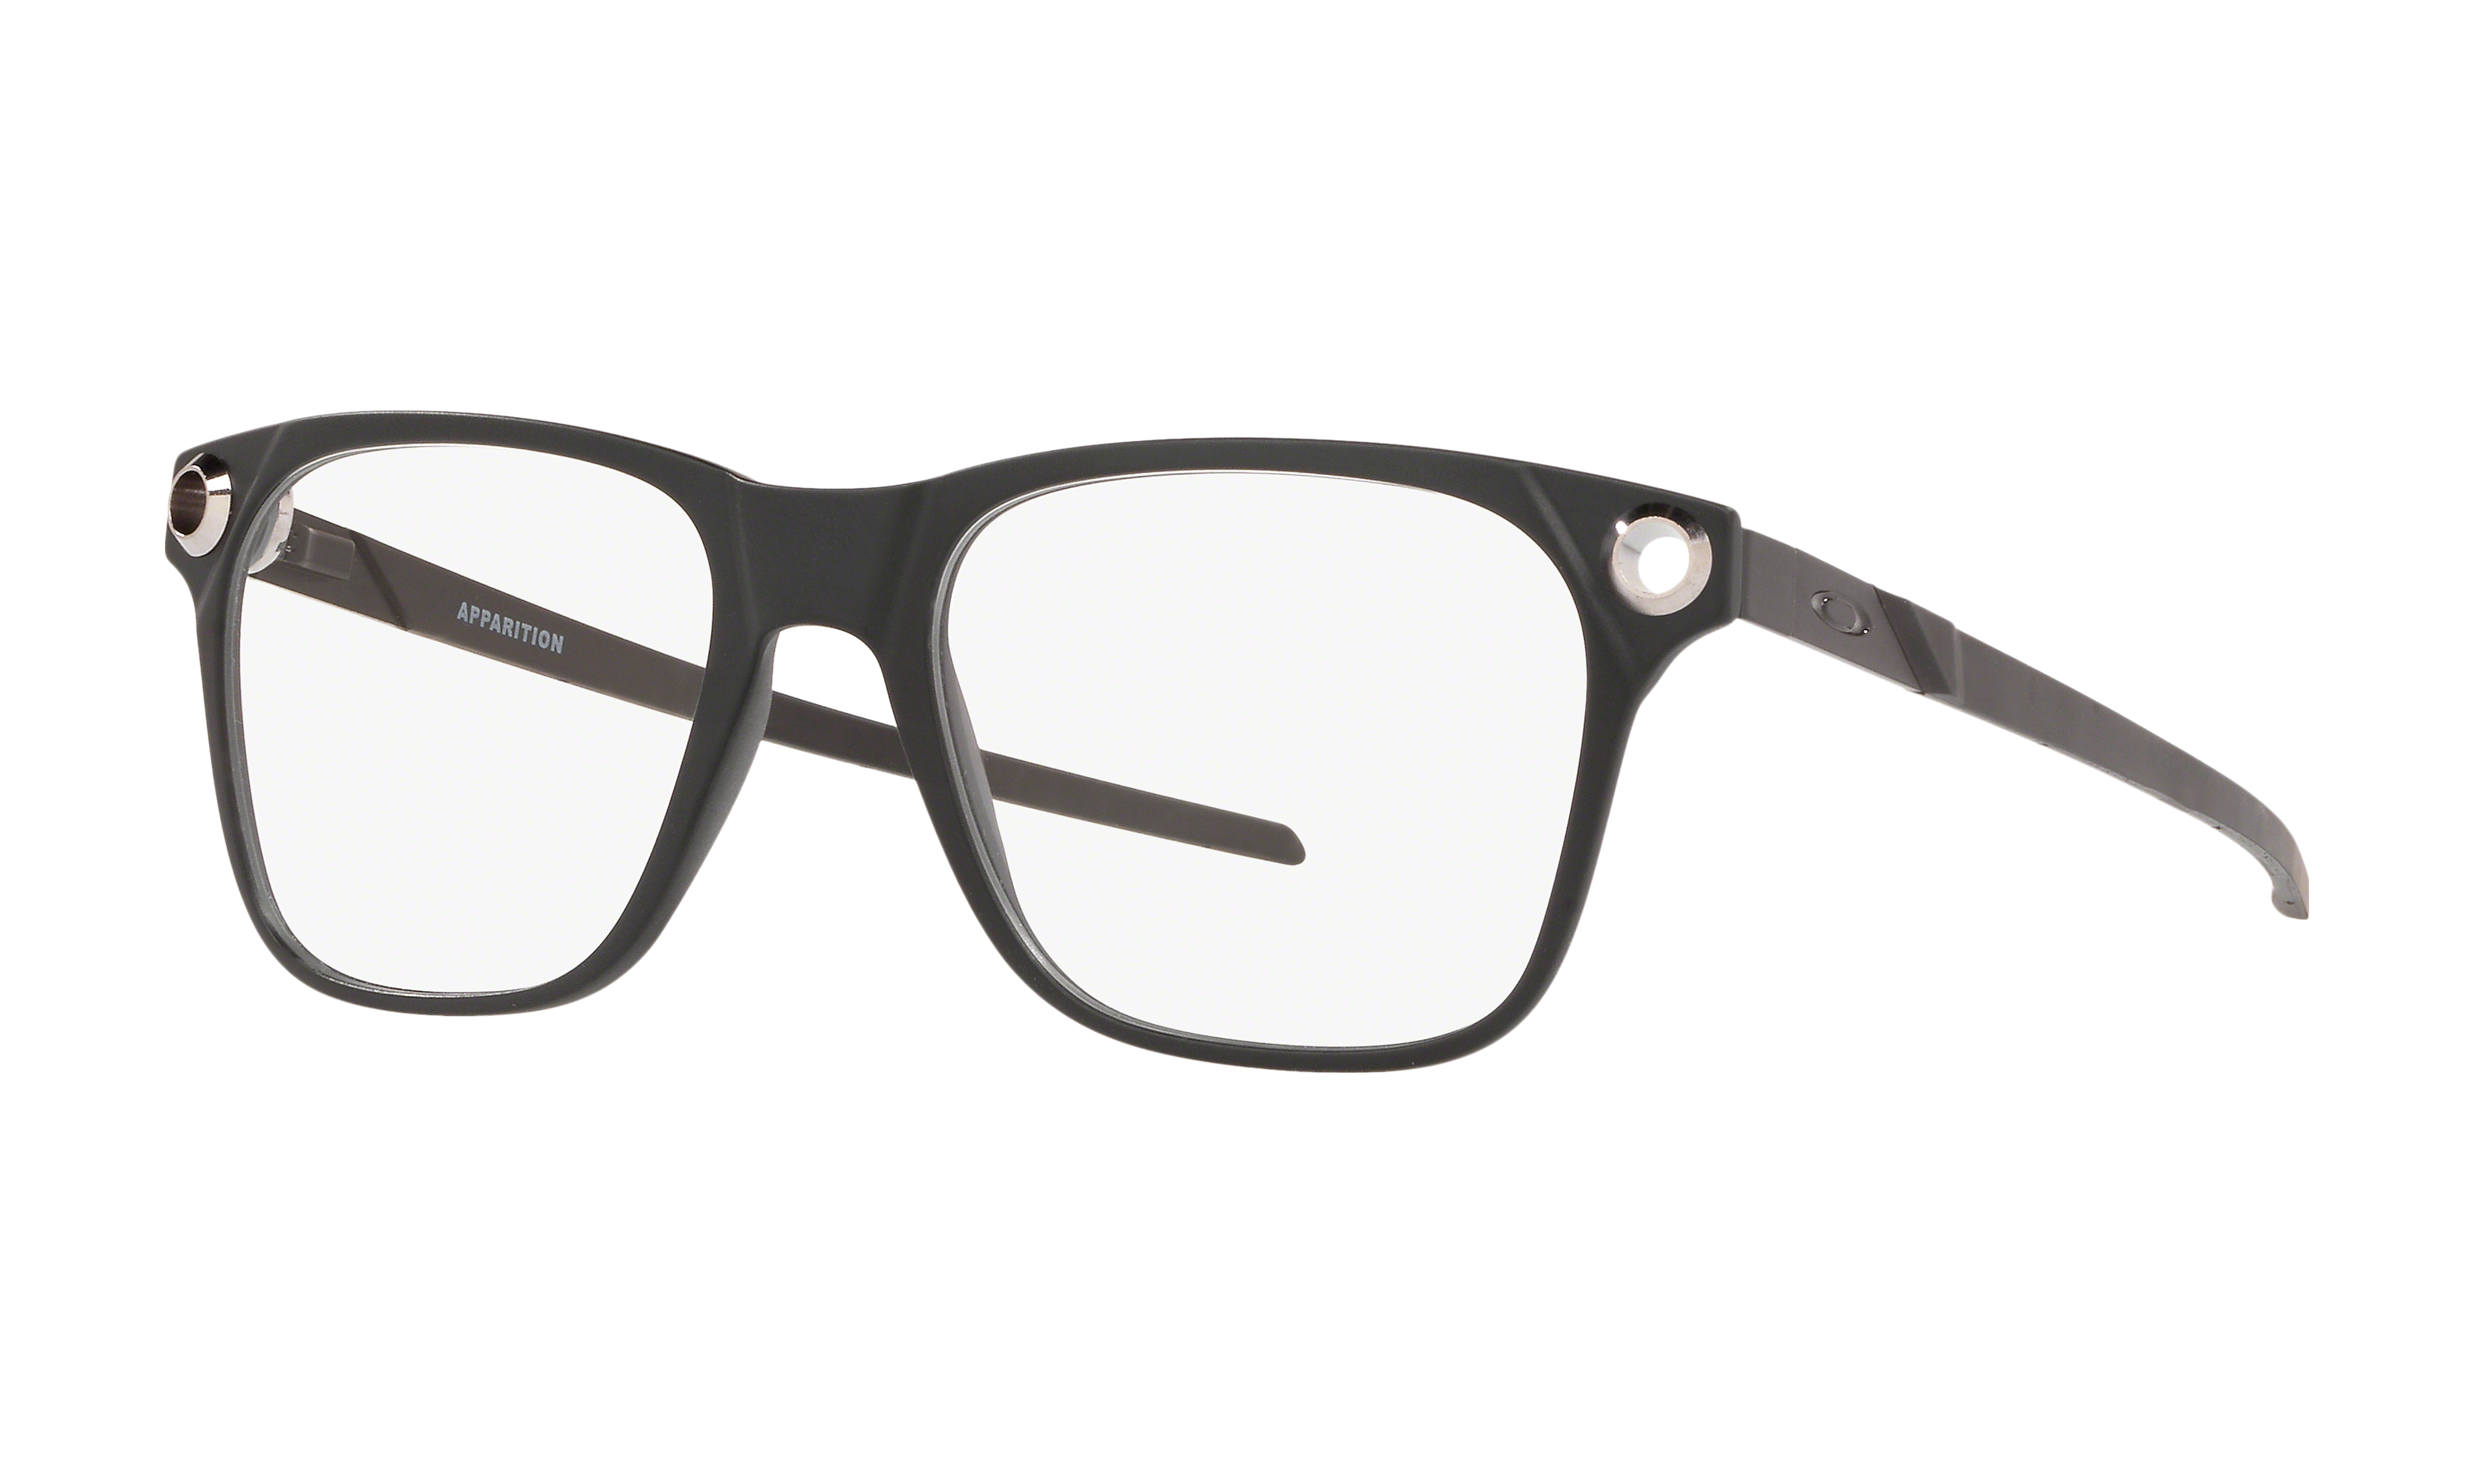 oakley glasses lenscrafters